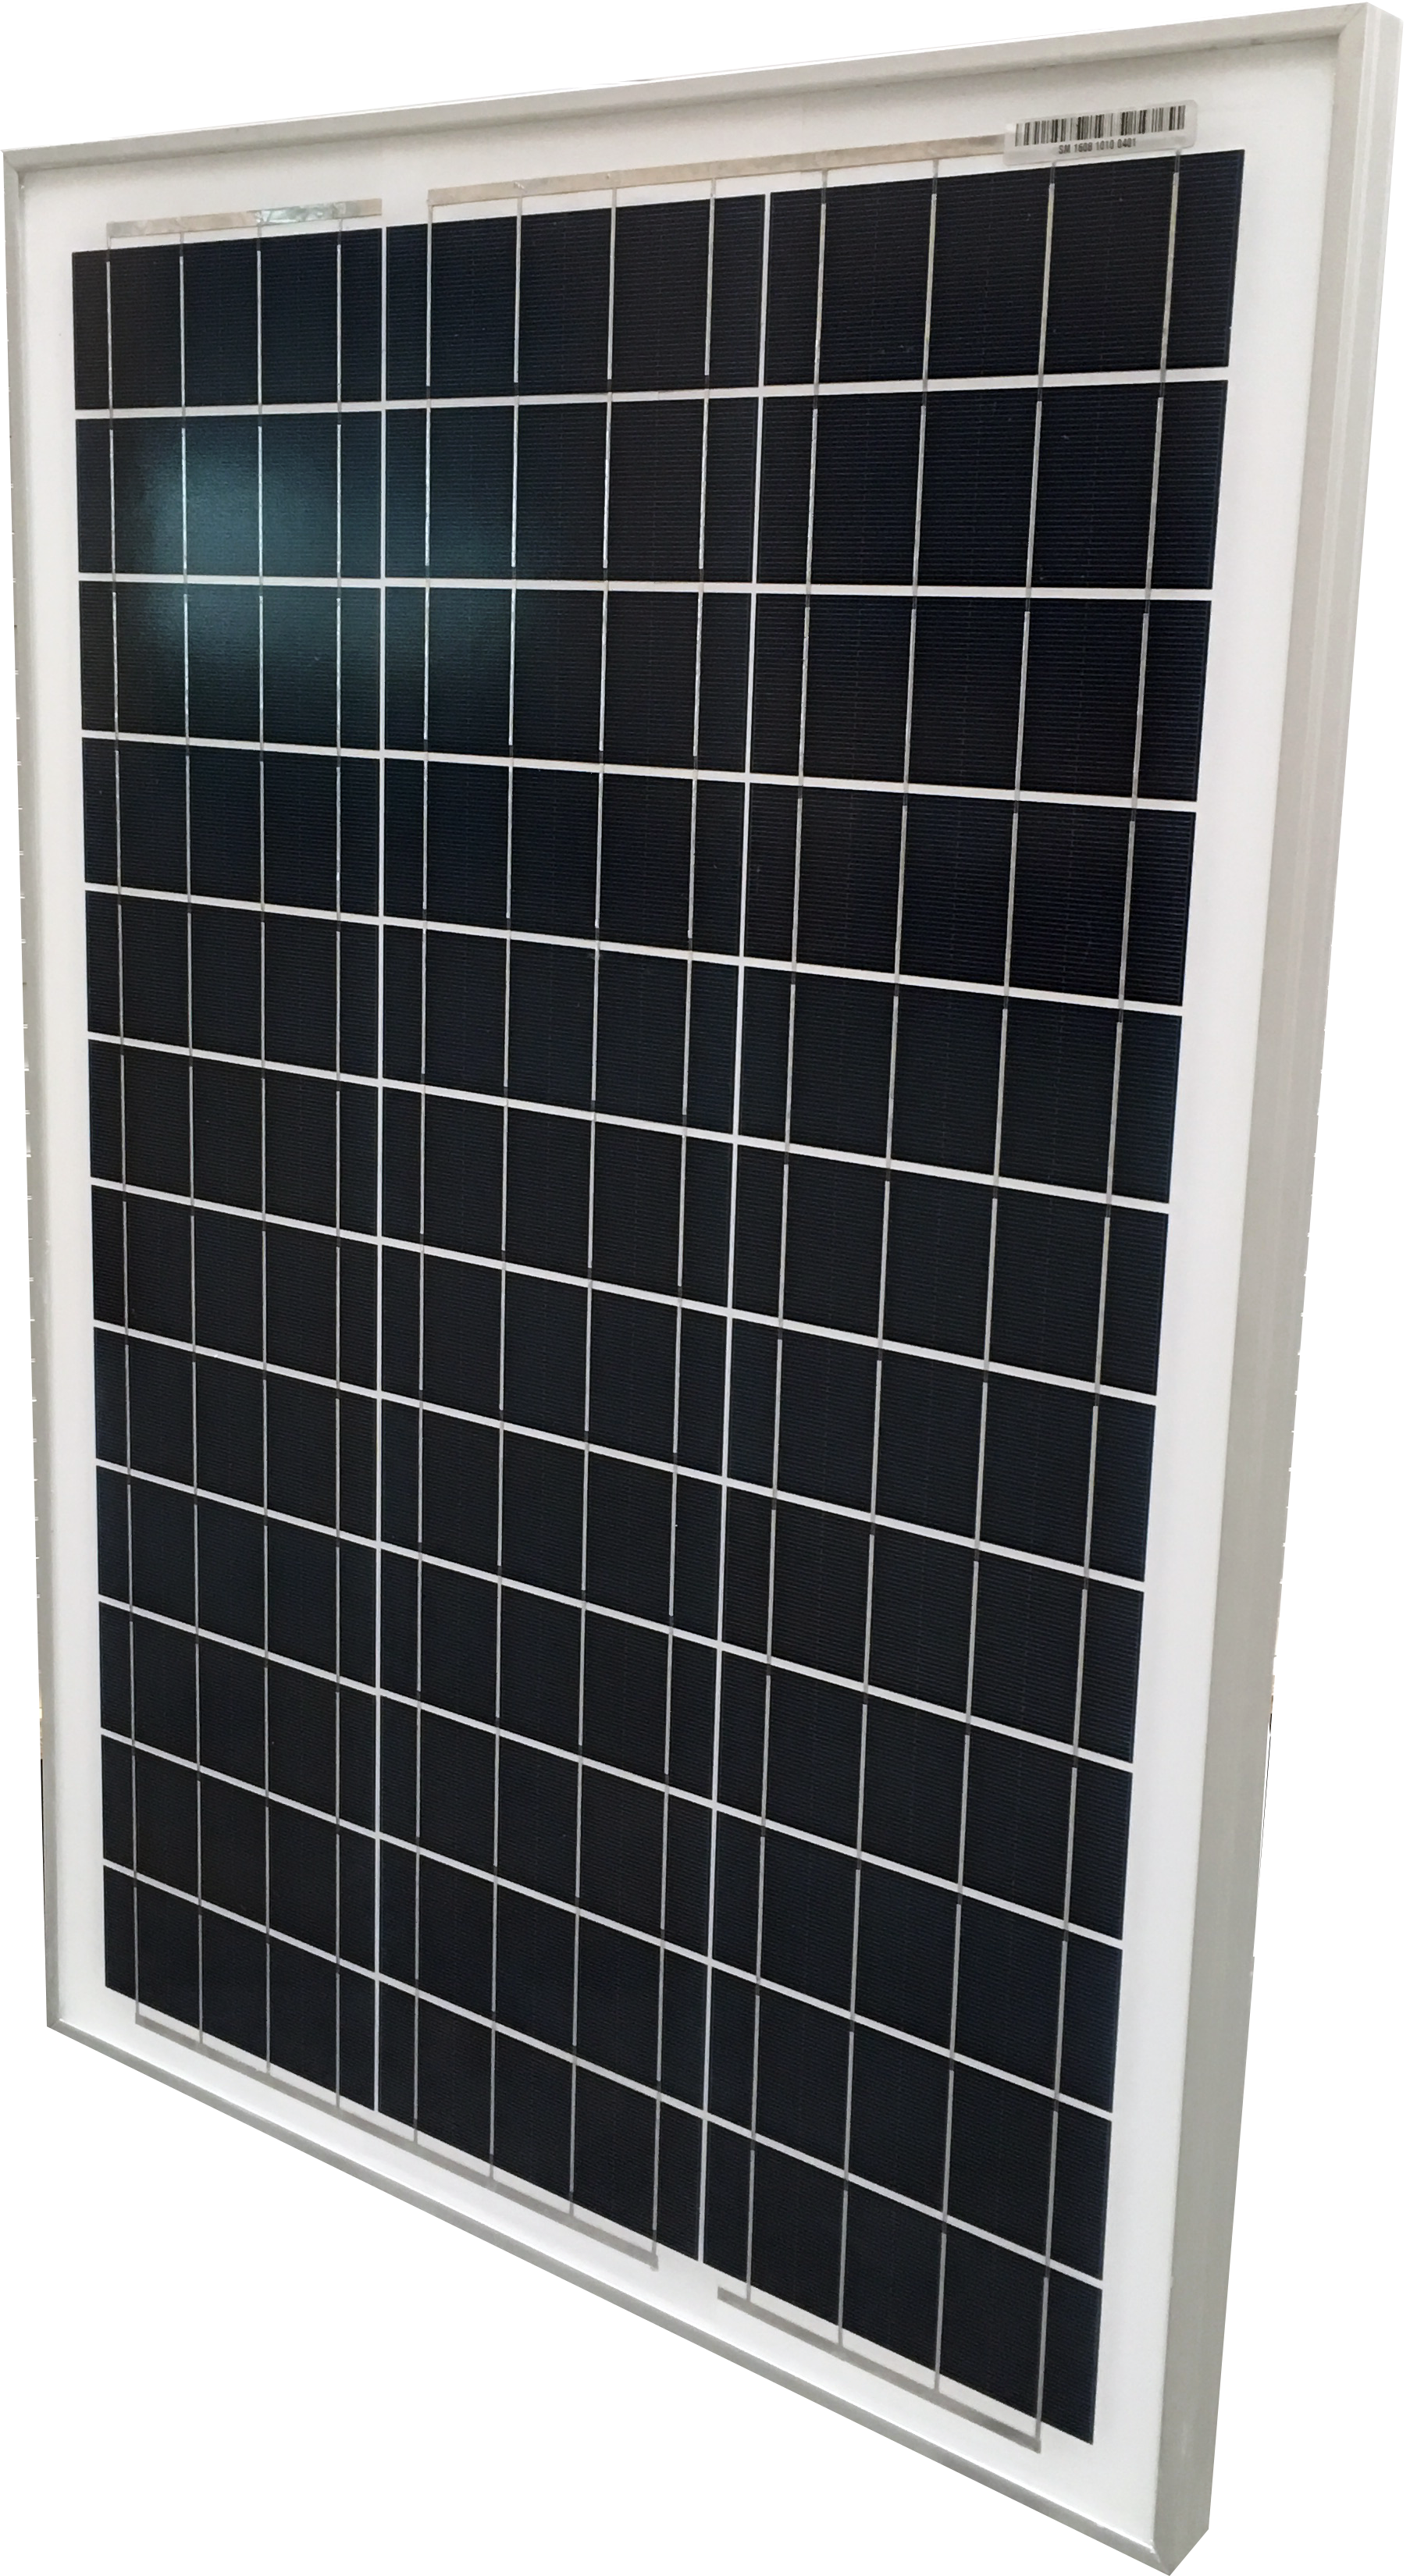 Солнечная батарея SM 50-12 P